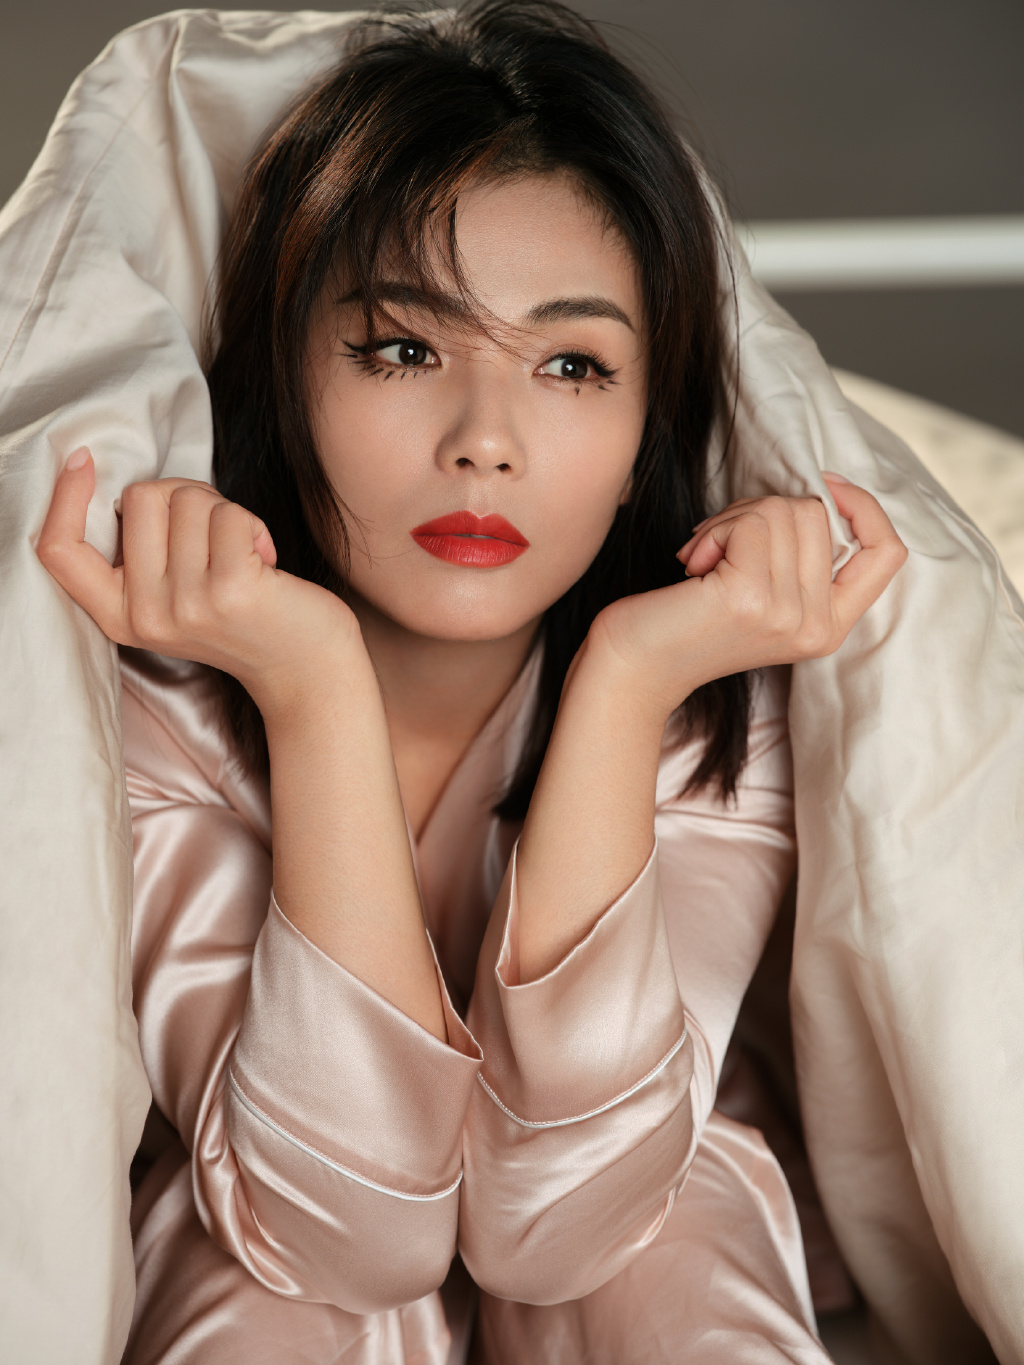 戴眼罩穿粉色睡裙的江西美女明星刘涛床上写真图片图片